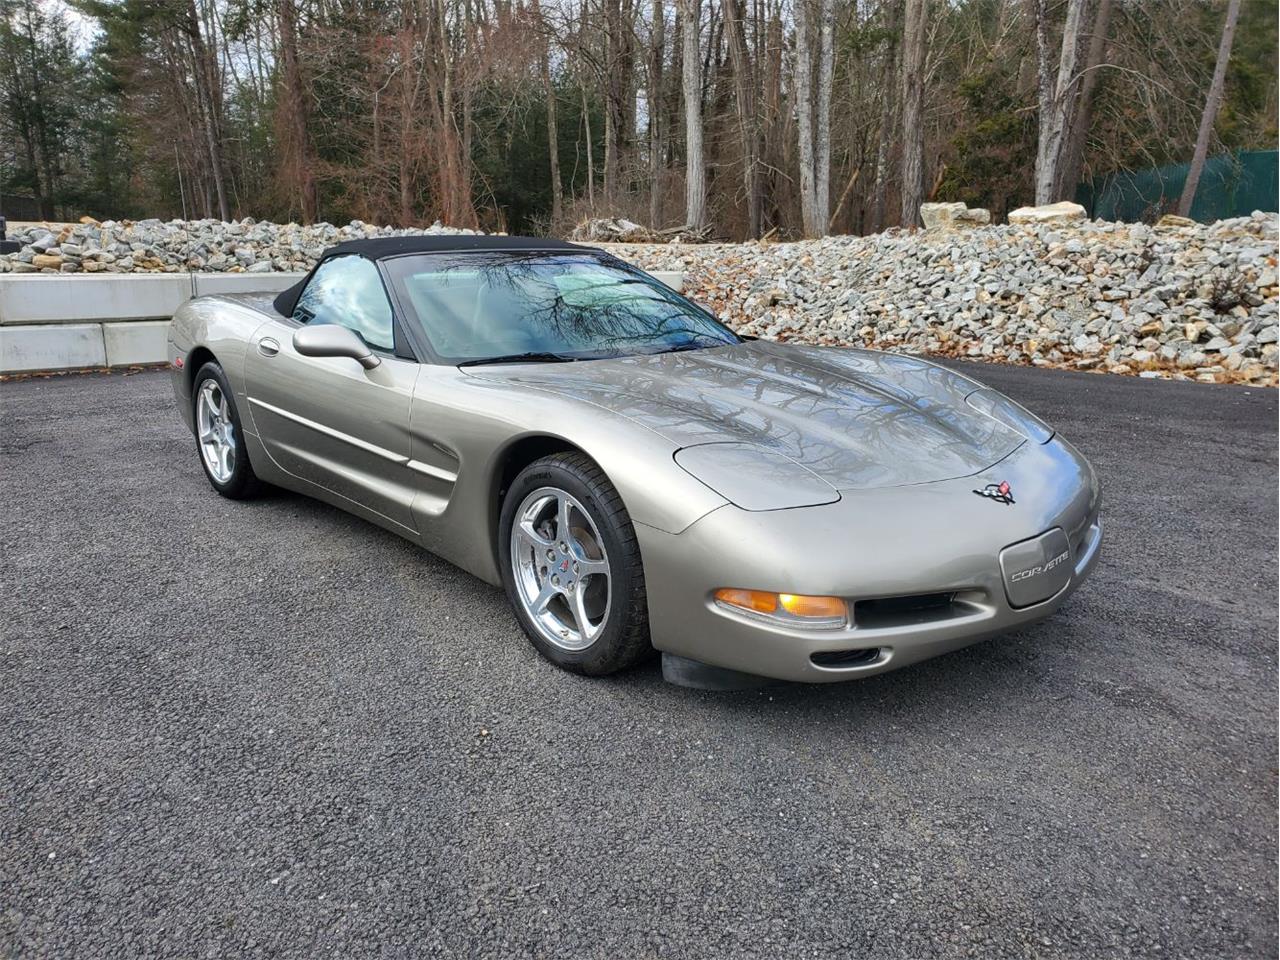 For Sale: 2000 Chevrolet Corvette in Charlton, Massachusetts for sale in Charlton, MA